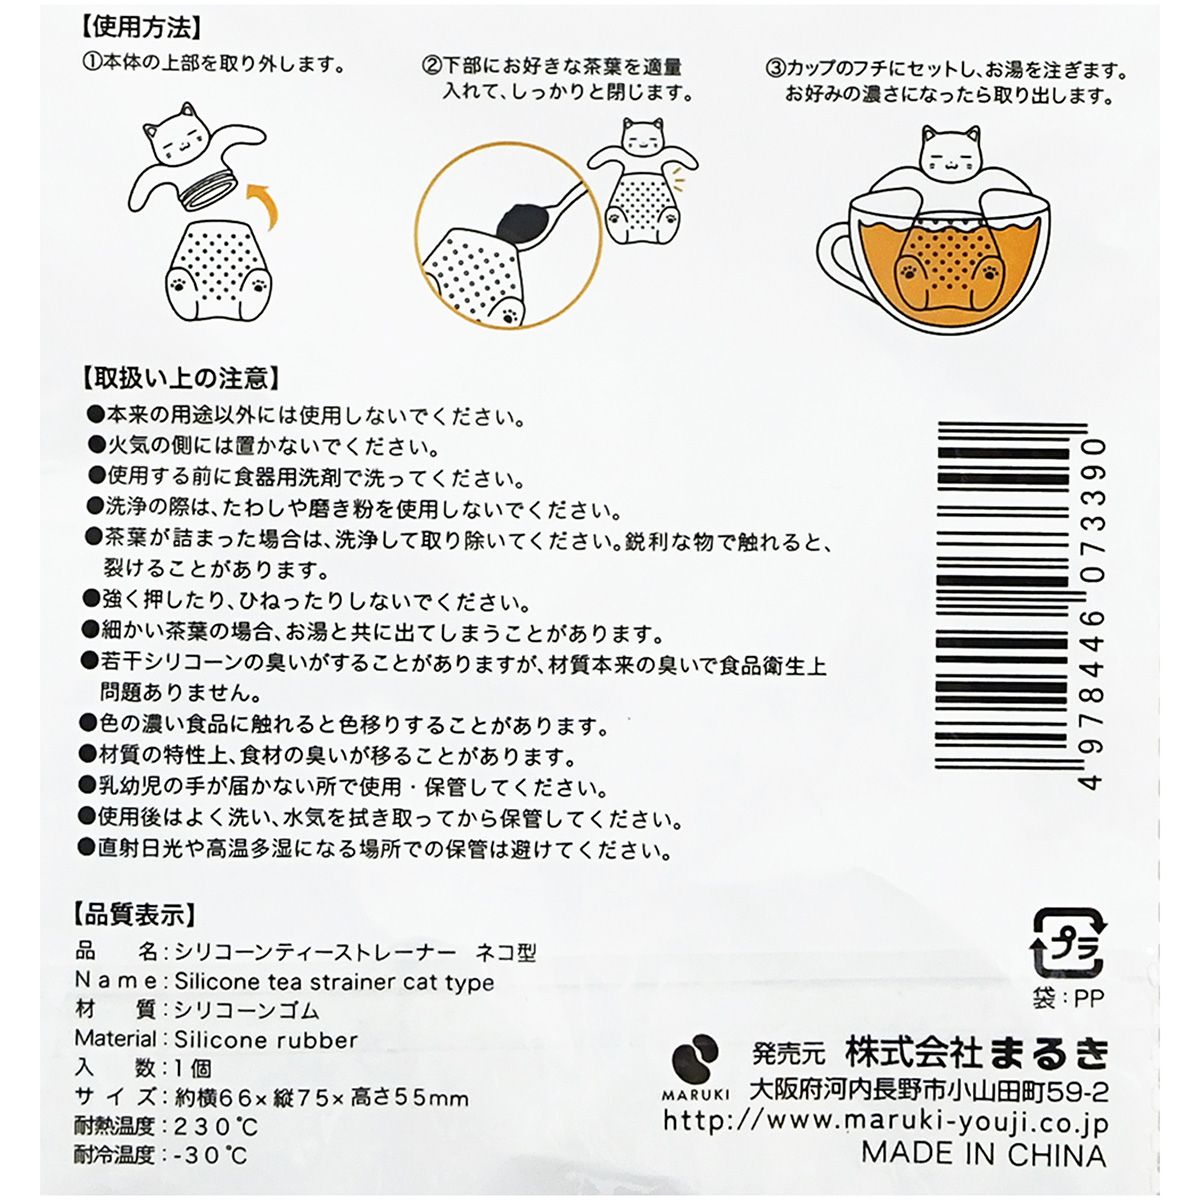 茶こし シリコン製 シリコーンティーストレーナーネコ型 0490/341959